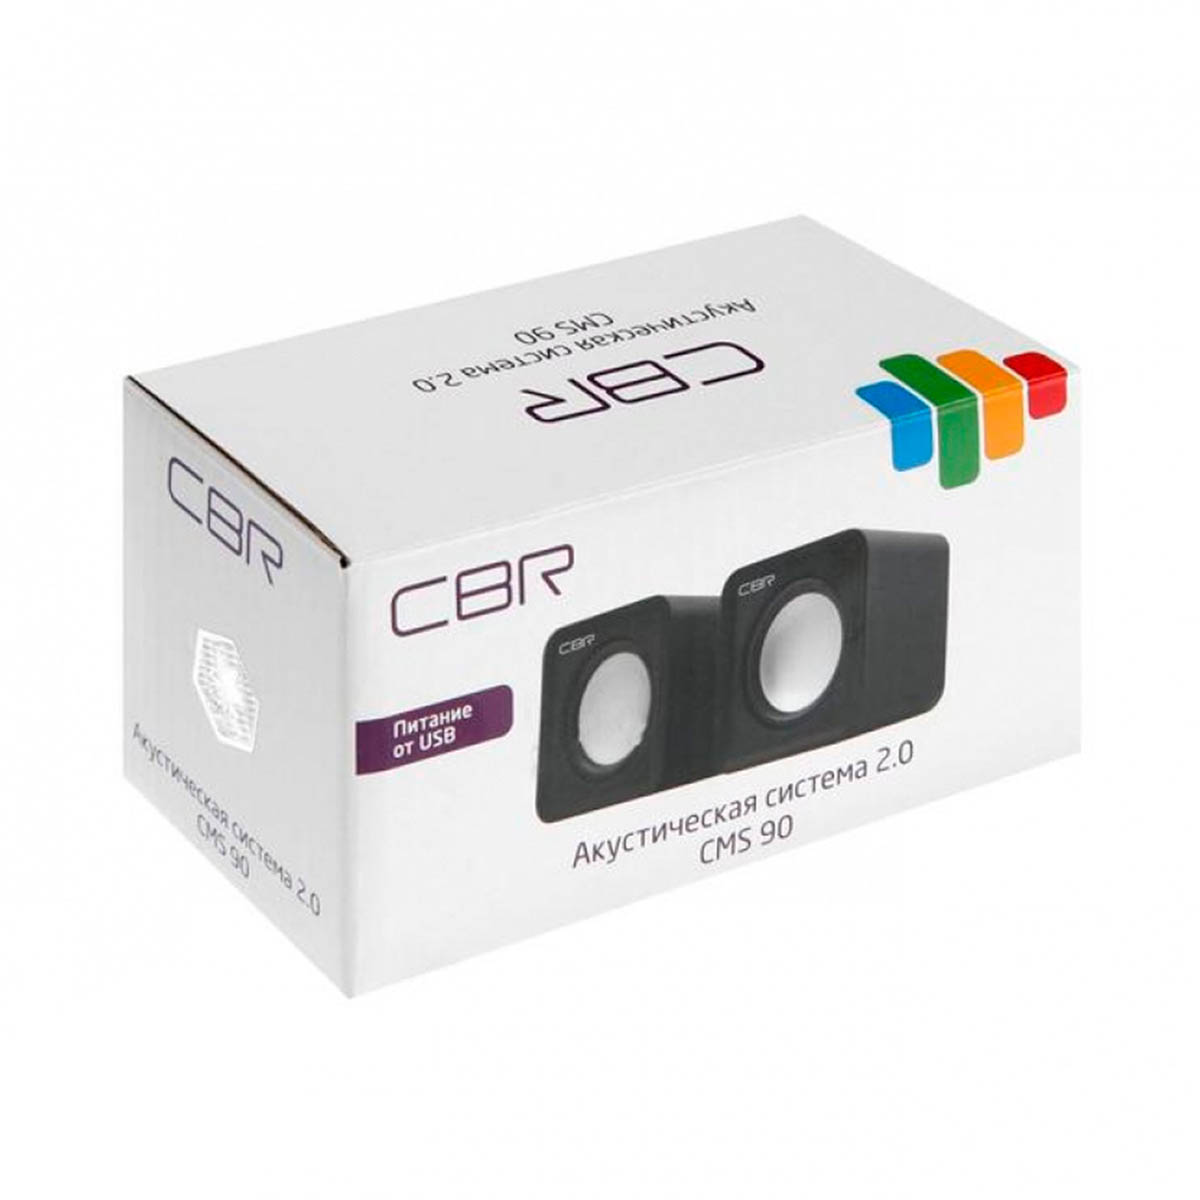 Активная акустическая система 2.0 CBR CMS 90, цвет серый